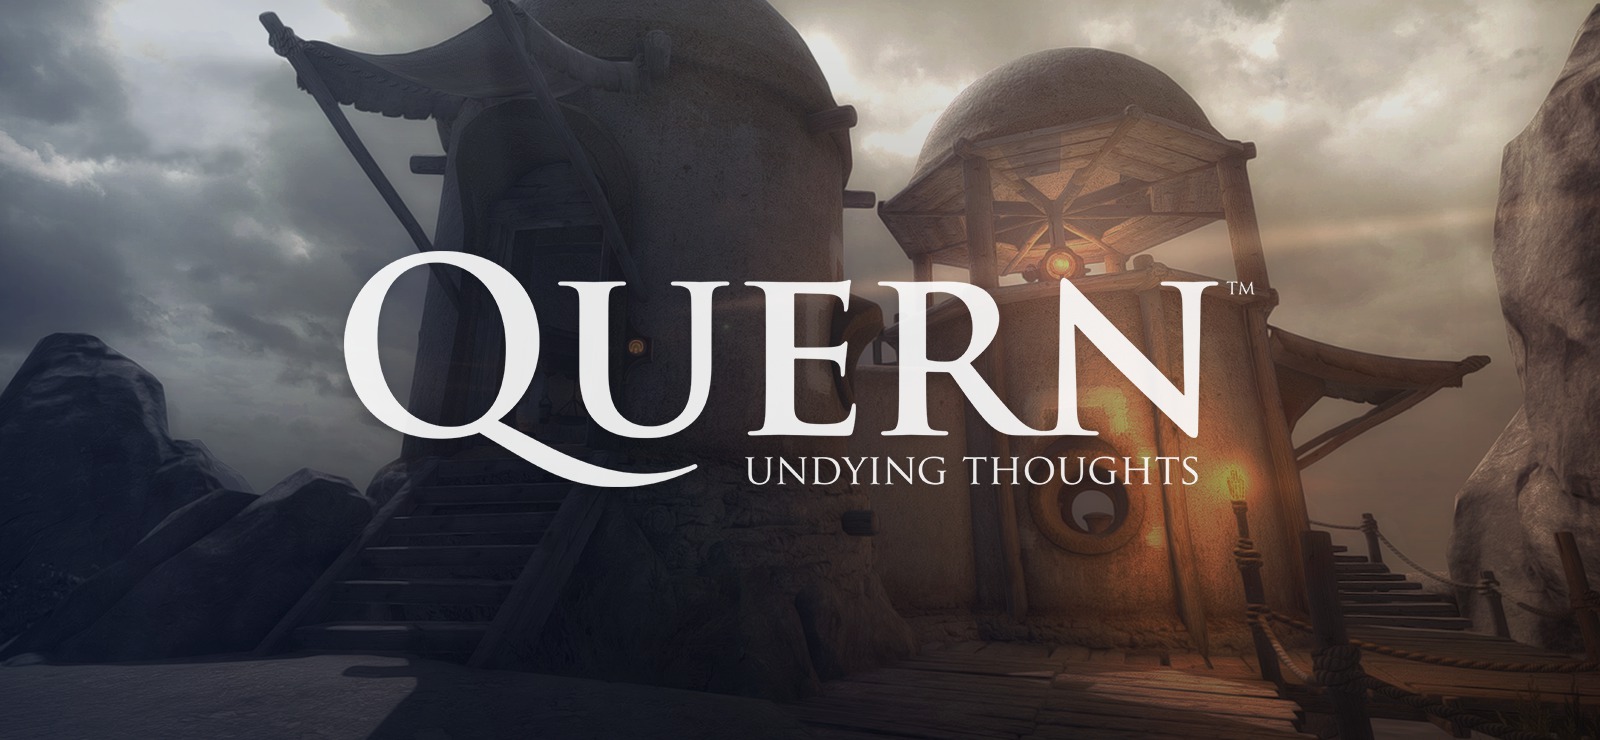 تحميل لعبة Quern Undying Thoughts v1.2.0 من Razor1911 برابط مباشر